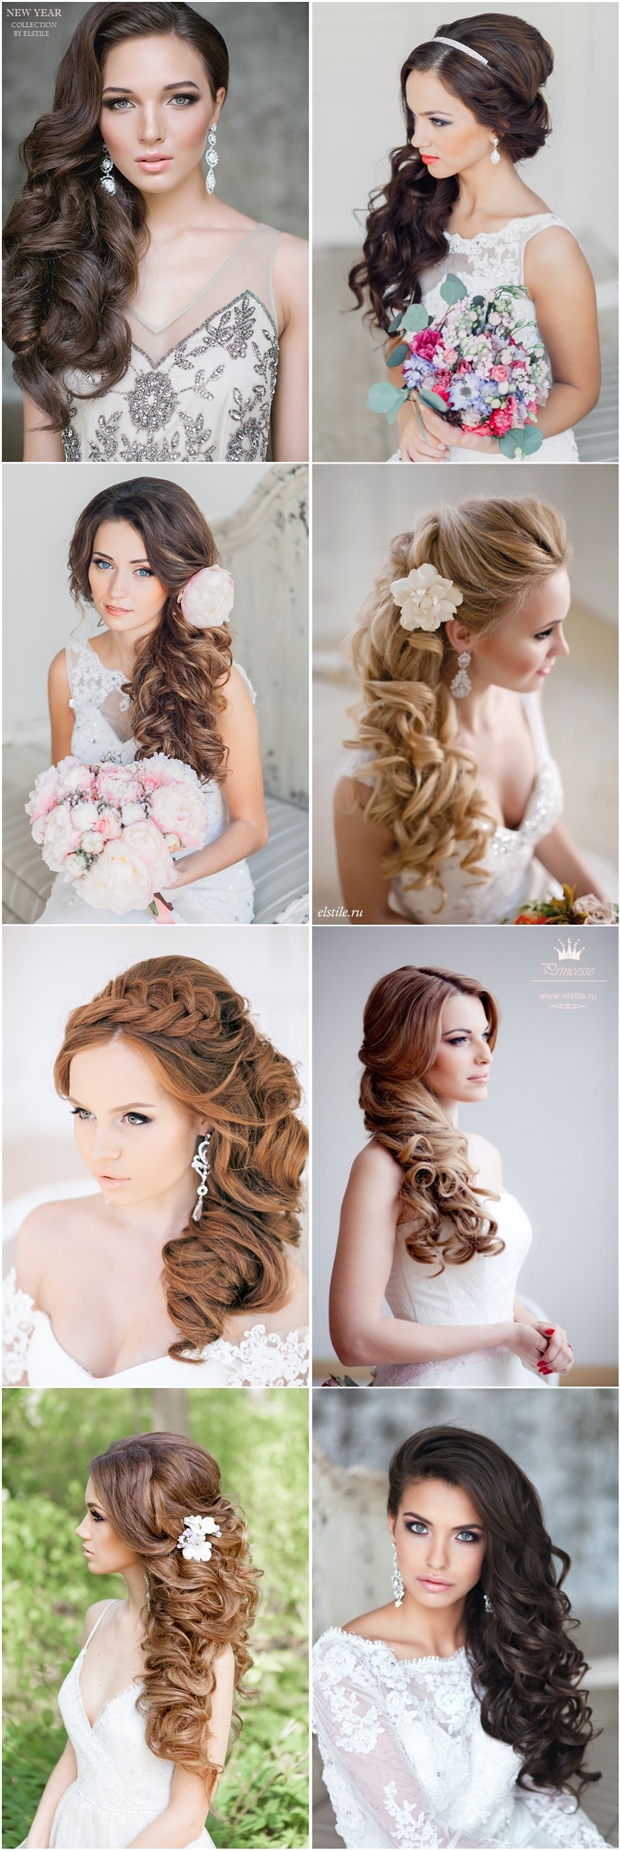 20 Gorgeous Half Up Wedding Hairstyle Ideas | Deer Pearl Flowers